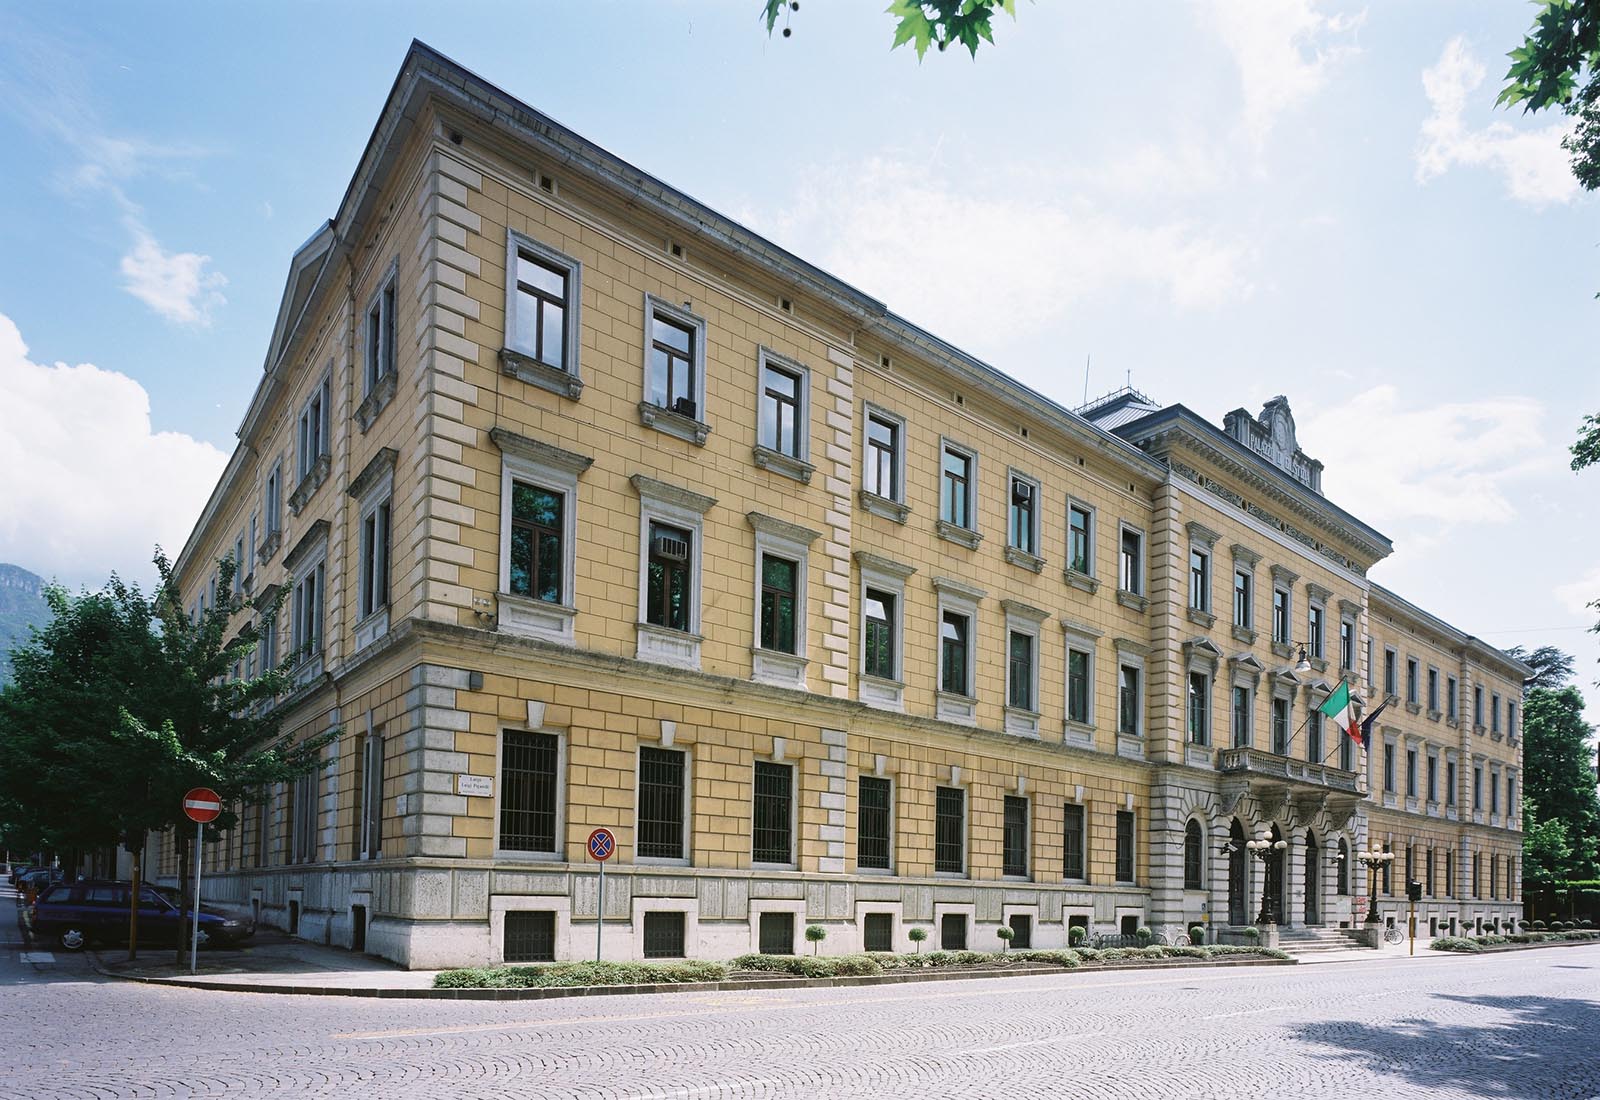 Polo giudiziario di Trento - Vista dell'edificio oggetto di restauro